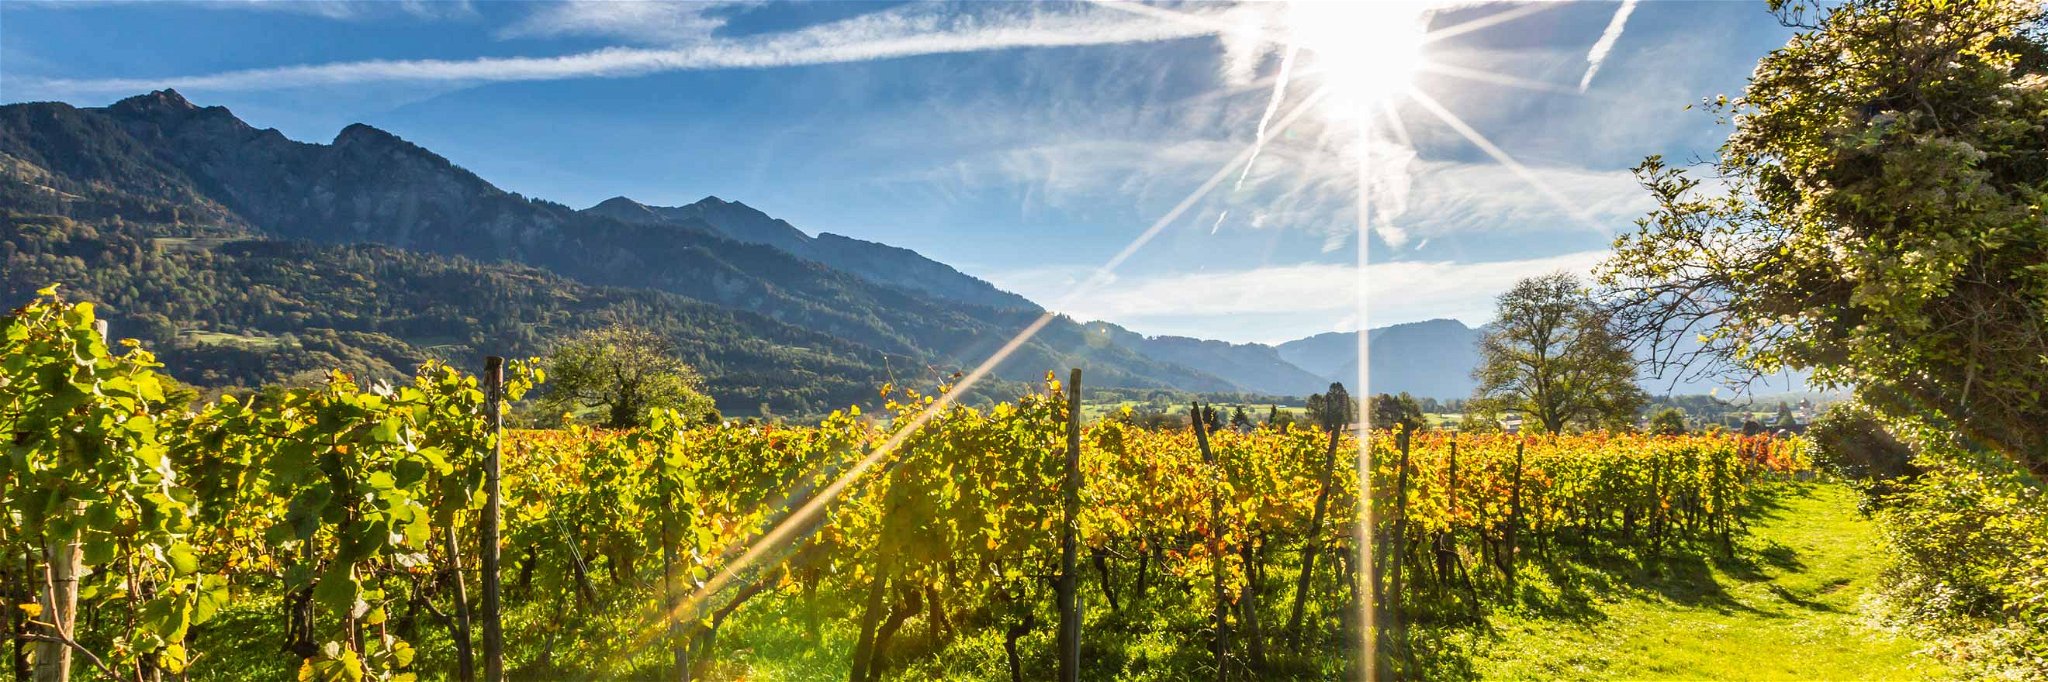 Umgeben von den Alpen entstehen in Graubünden einige der besten Weine der Schweiz.